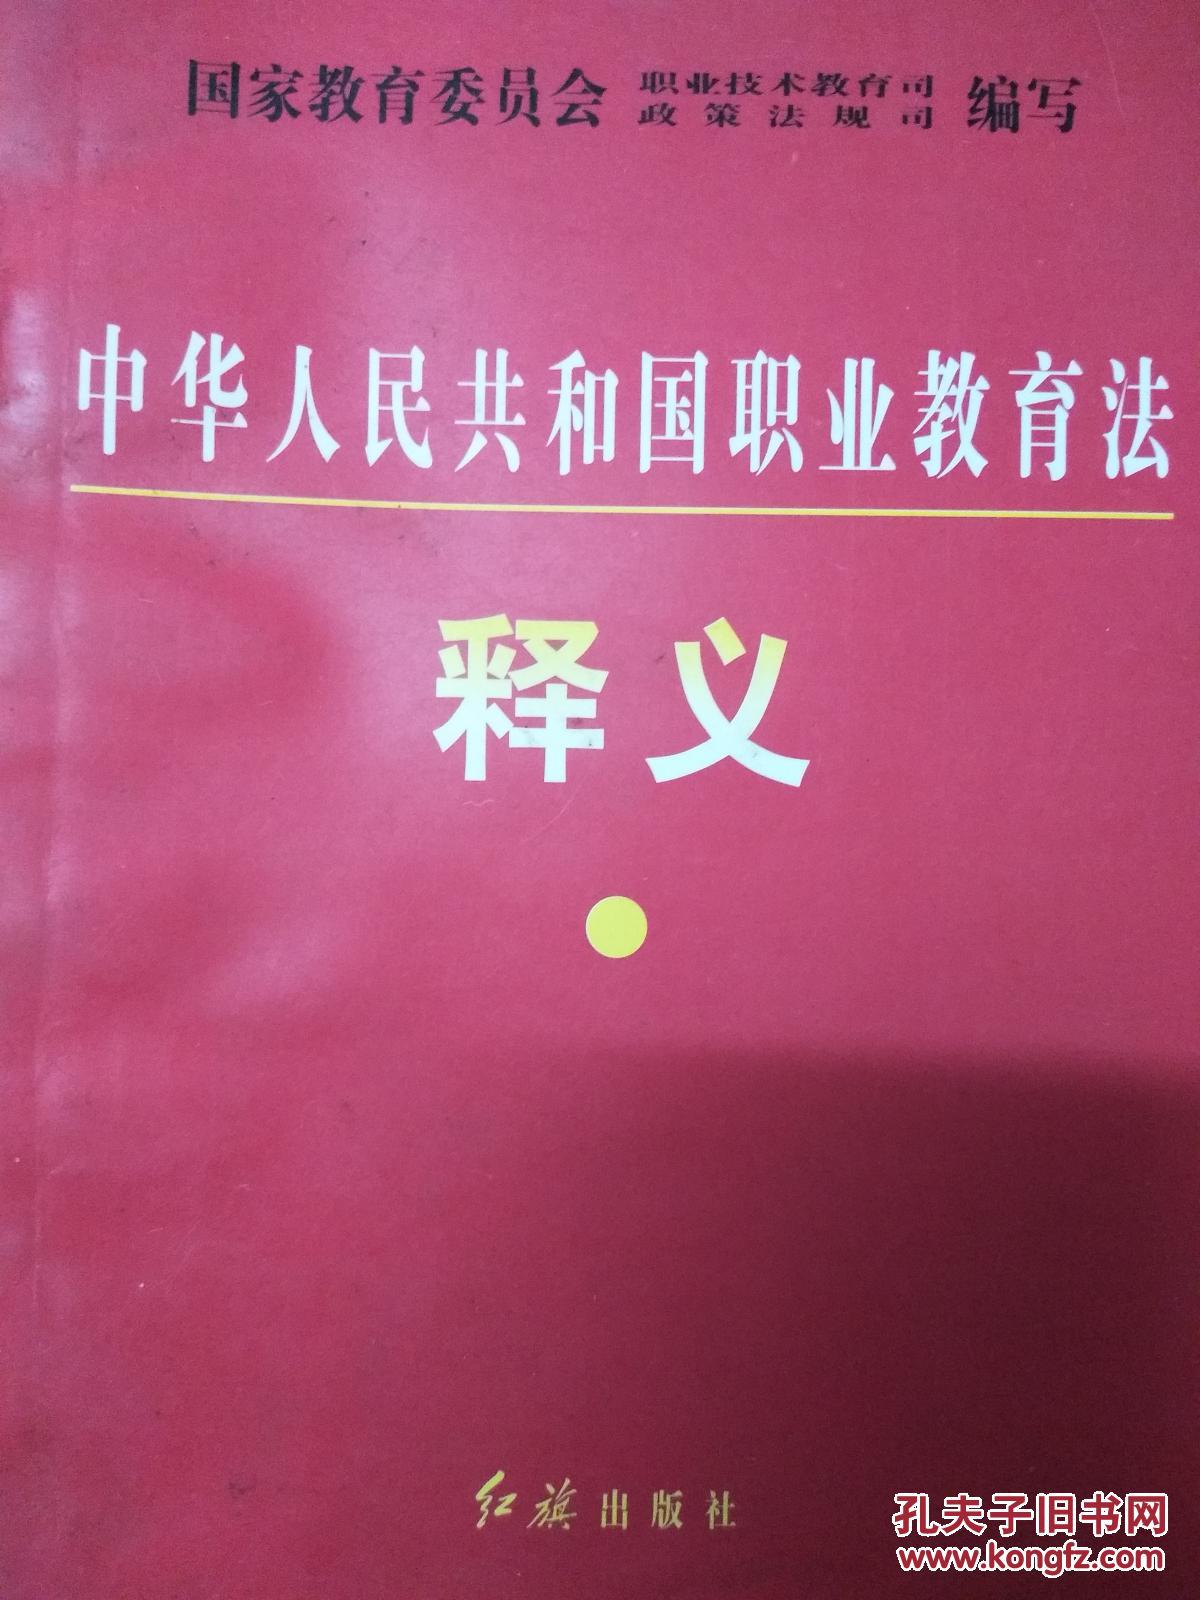 【图】中华人民共和国职业教育法释义_红旗出